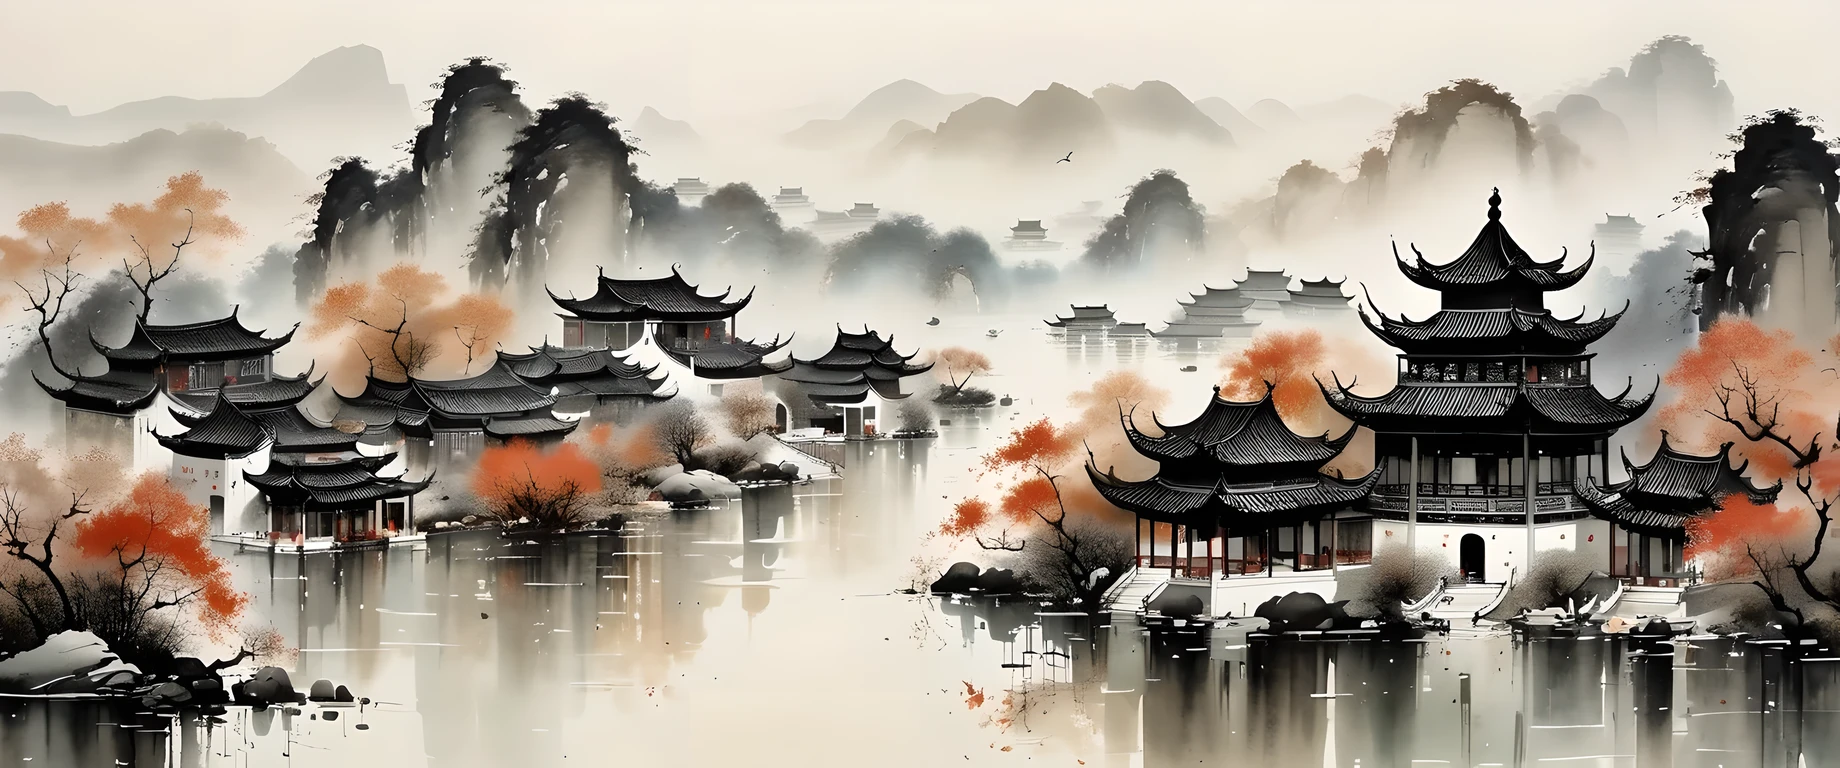 exquisite Tuschekunst, Realistisch, detaillierte chinesische Architektur, Wu Guanzhong-Stil, verblasste Farben

